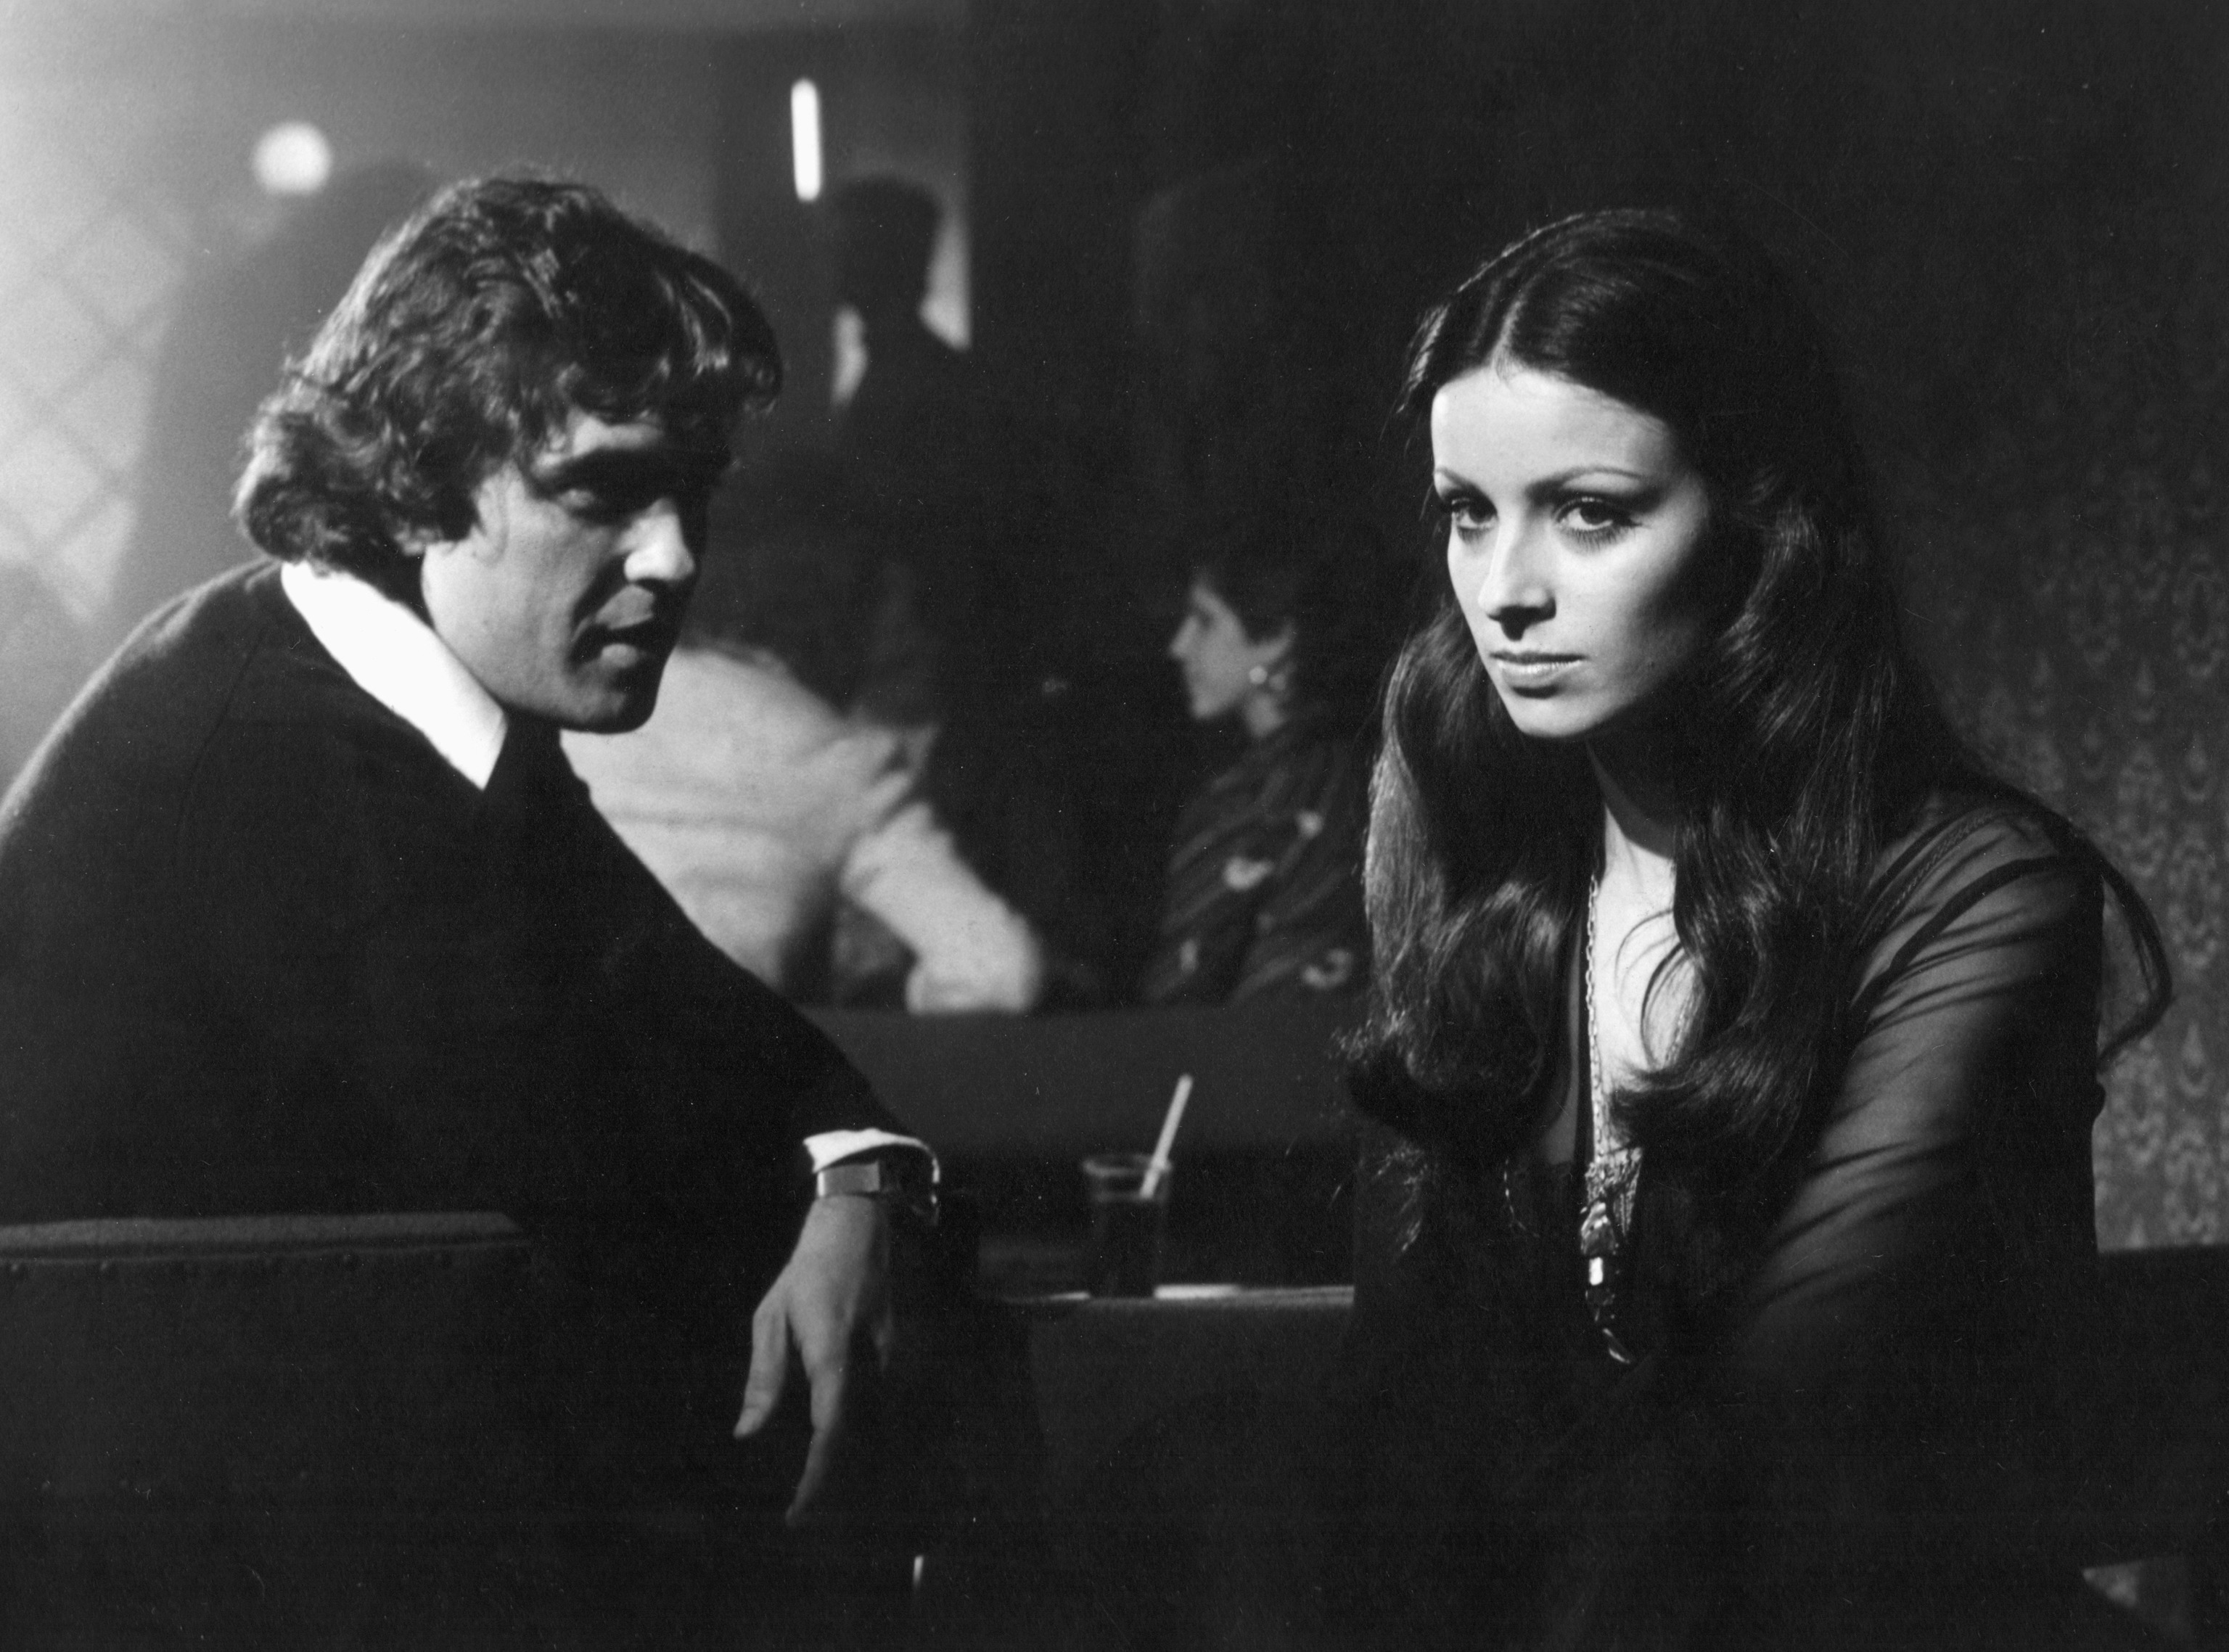 Con Patxi Andin en la pelcula 'La otra alcoba' (1976).